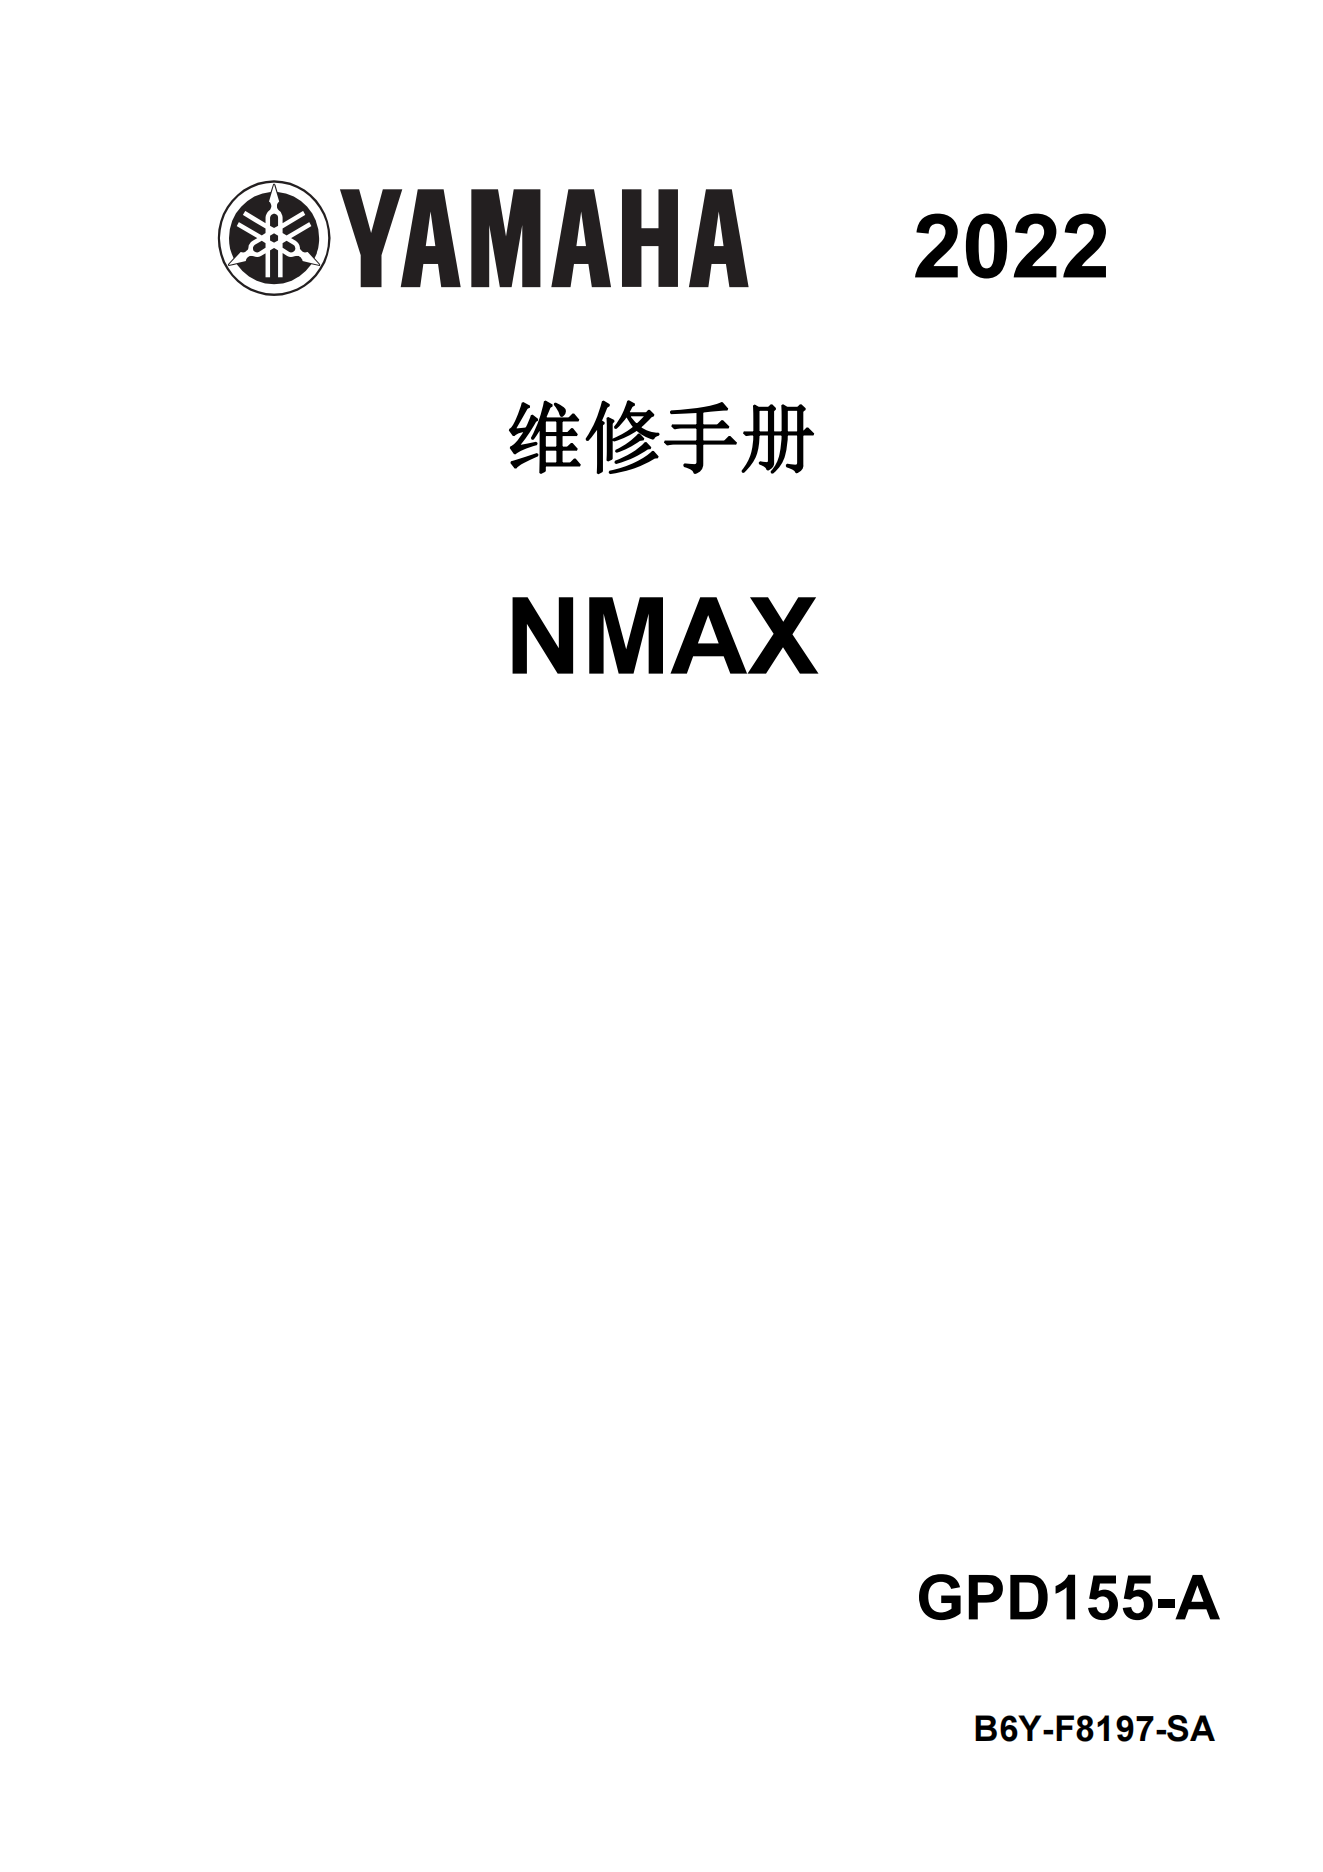 简体中文2022-2024年雅马哈nmax155 tcs维修手册GPD150-A维修手册插图